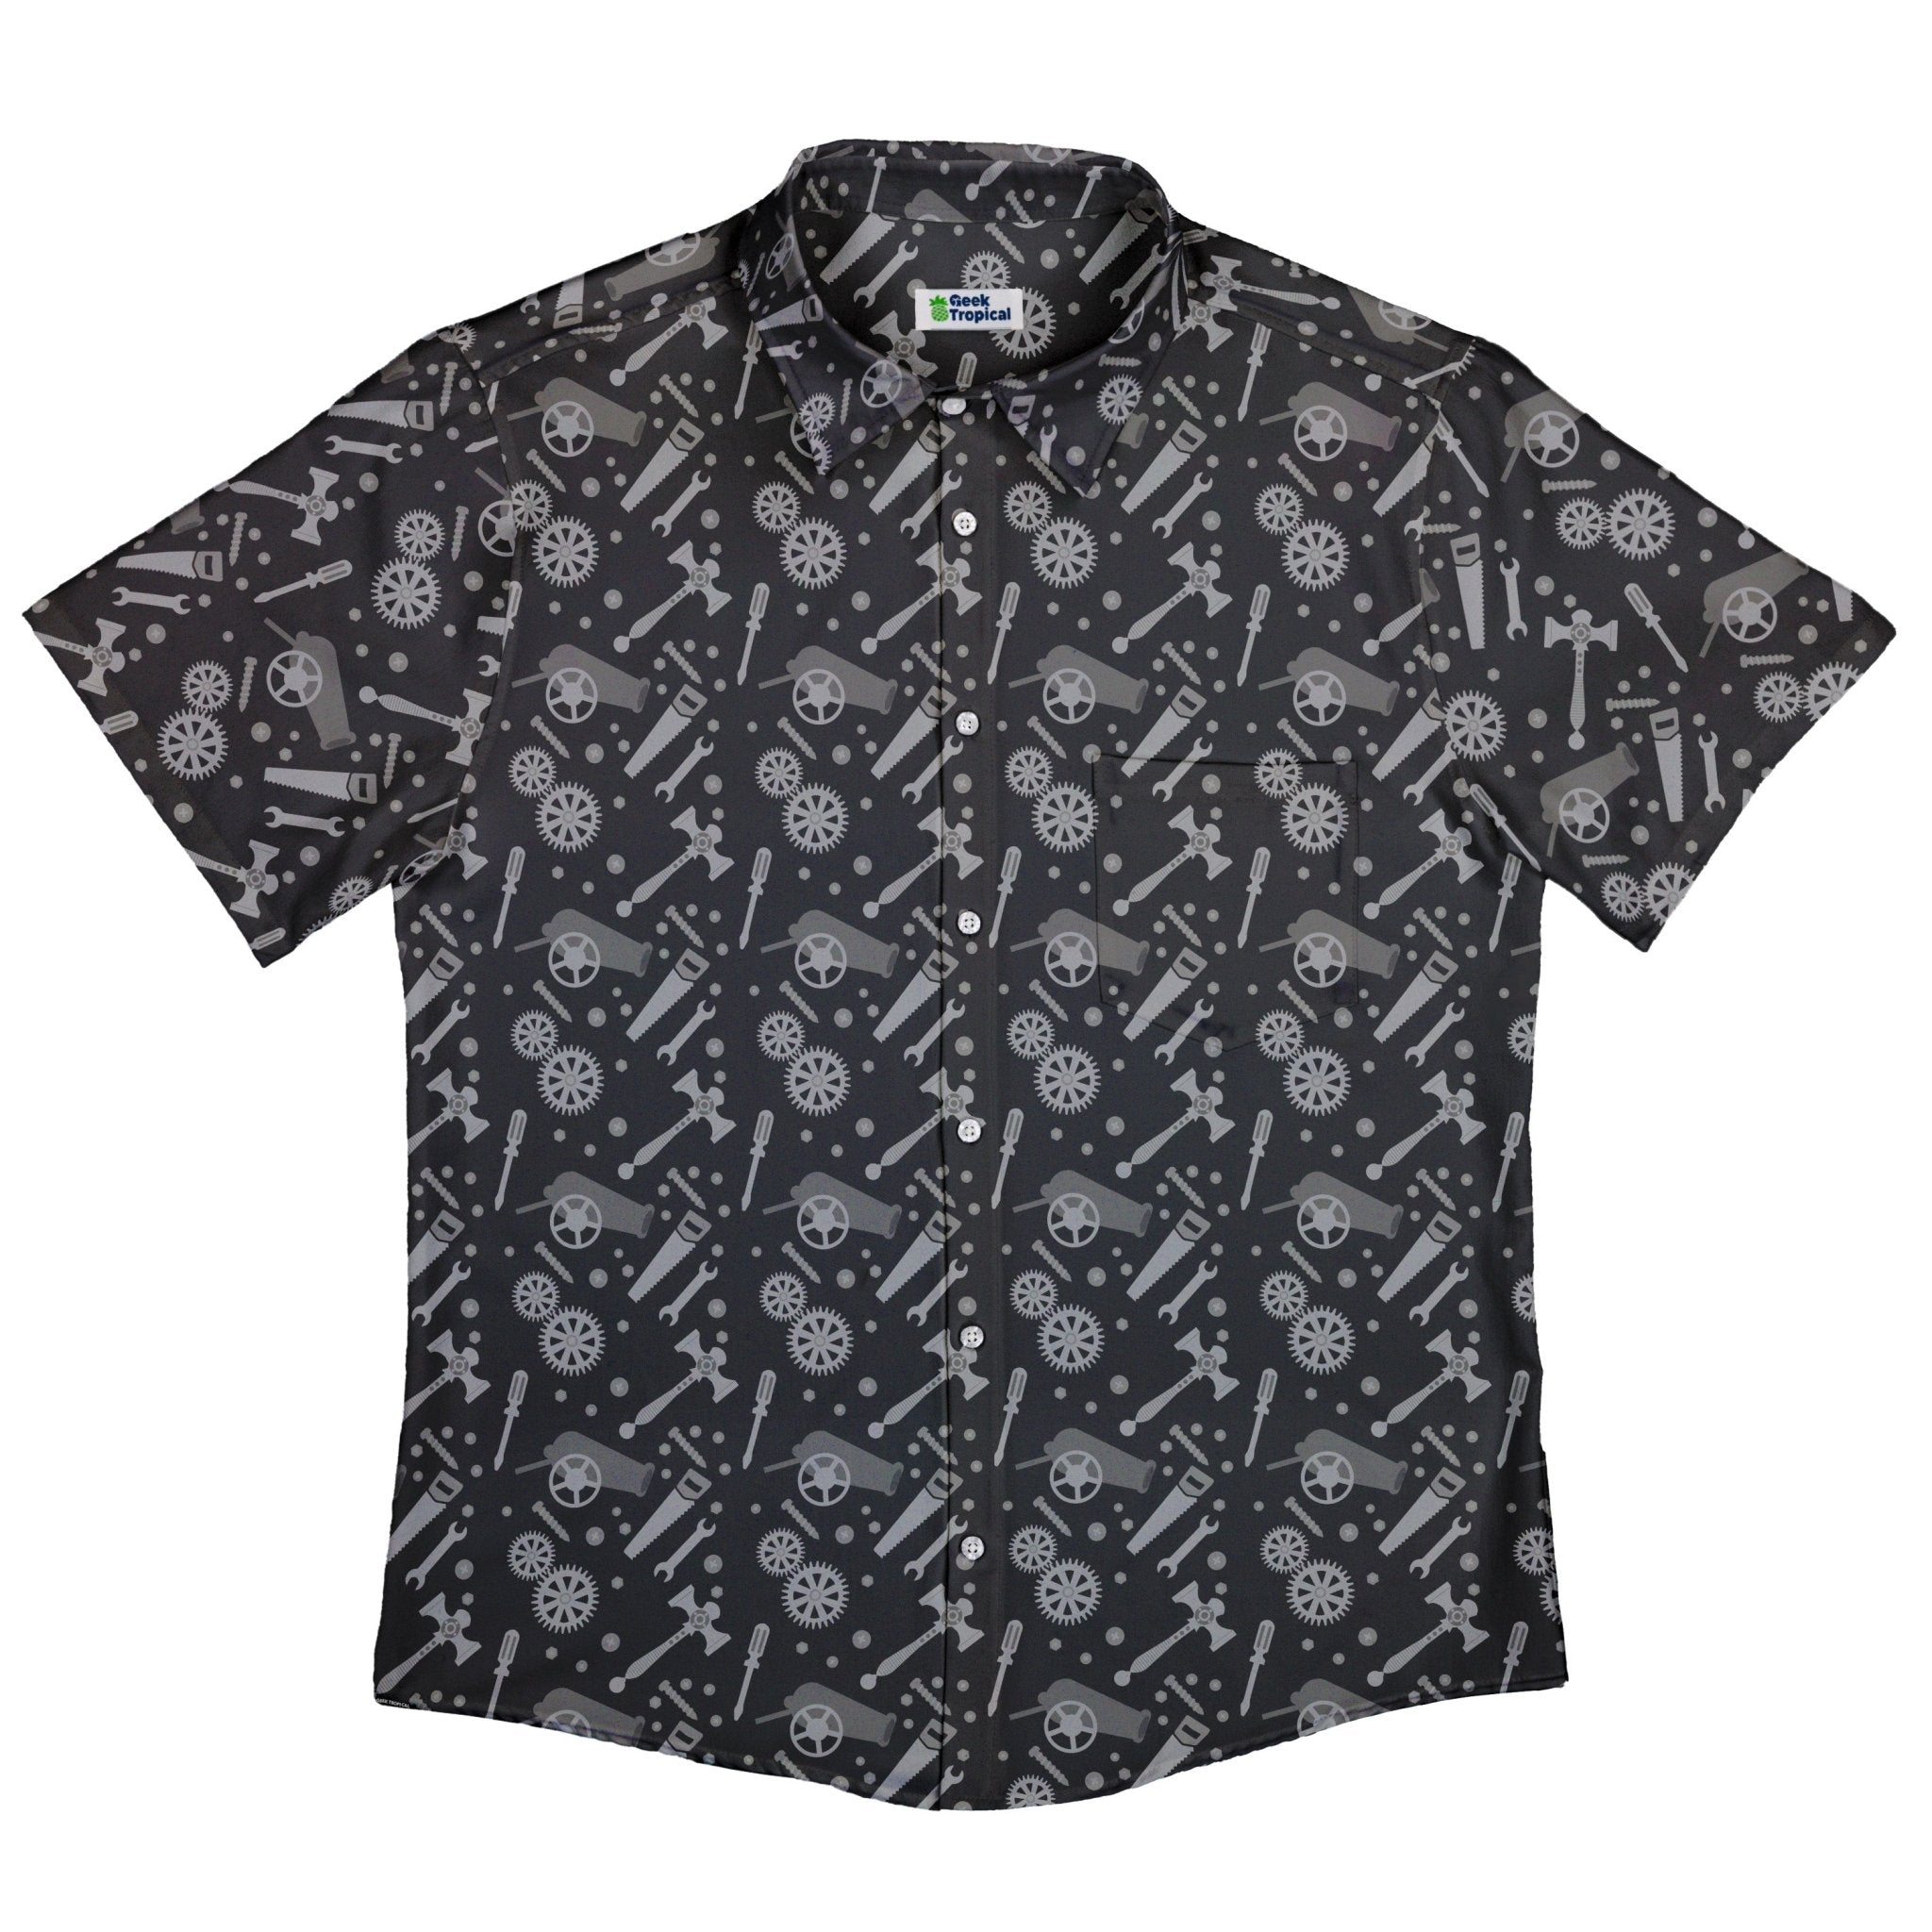 Dnd Artificer Class Button Up Shirt - adult sizing - Design by Heather Davenport - dnd & rpg print